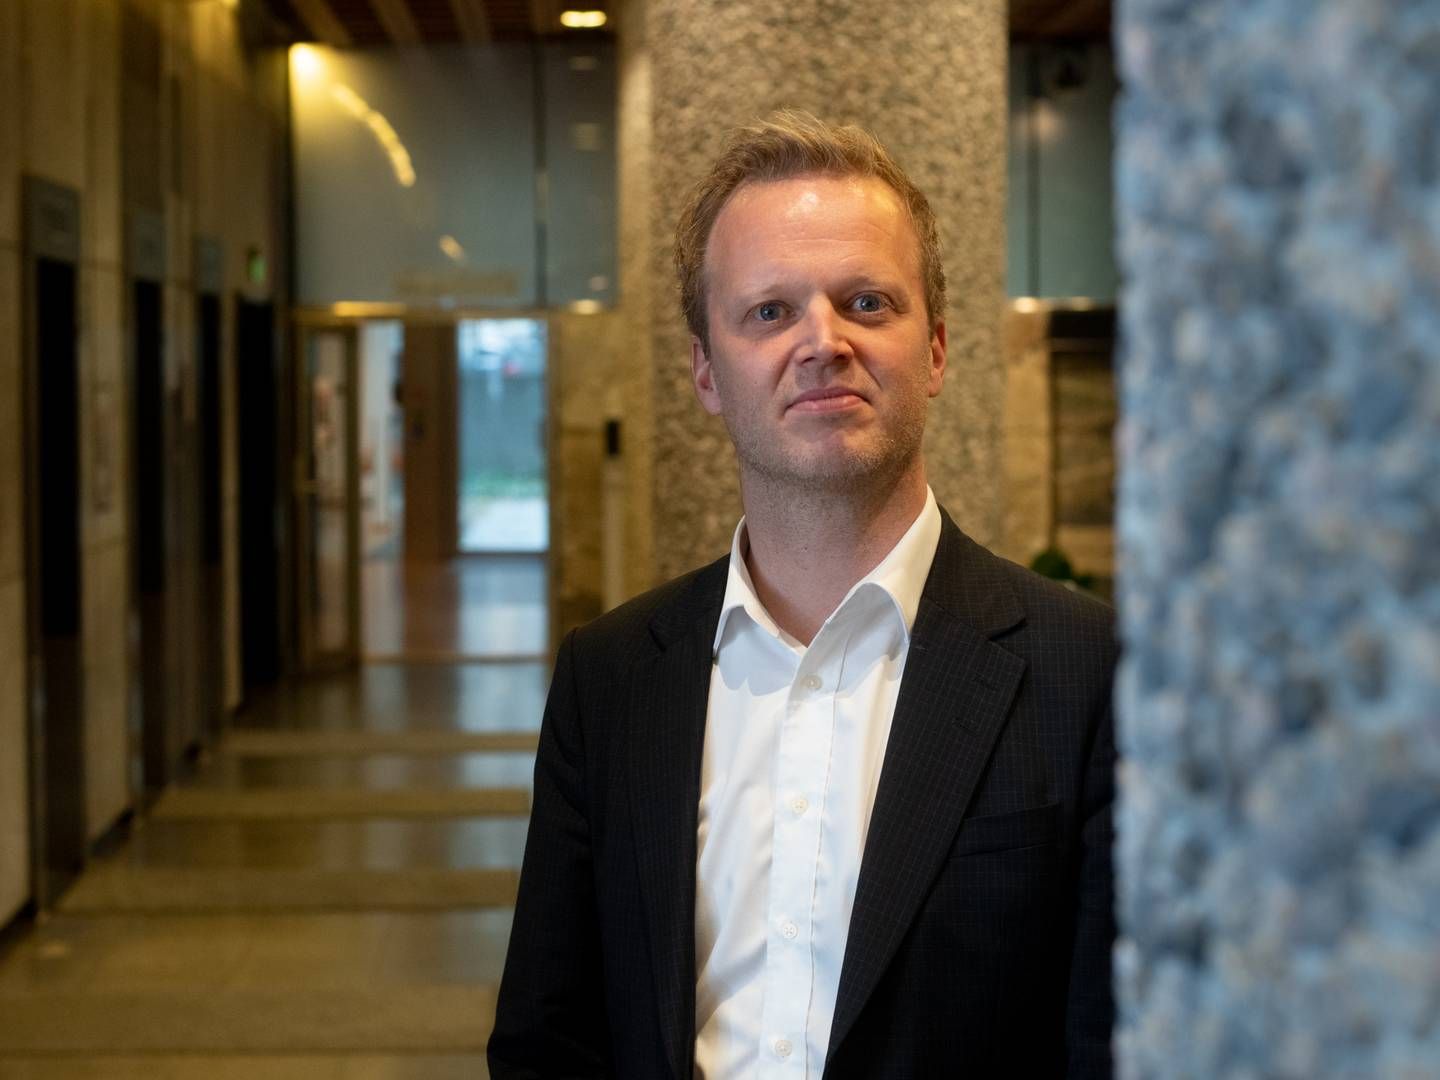 «HAR MANGLER»: LMI-direktør Leif Rune Skymoen mener forslaget til statsbudsjett også har mangler. | Foto: Vidar Sandnes